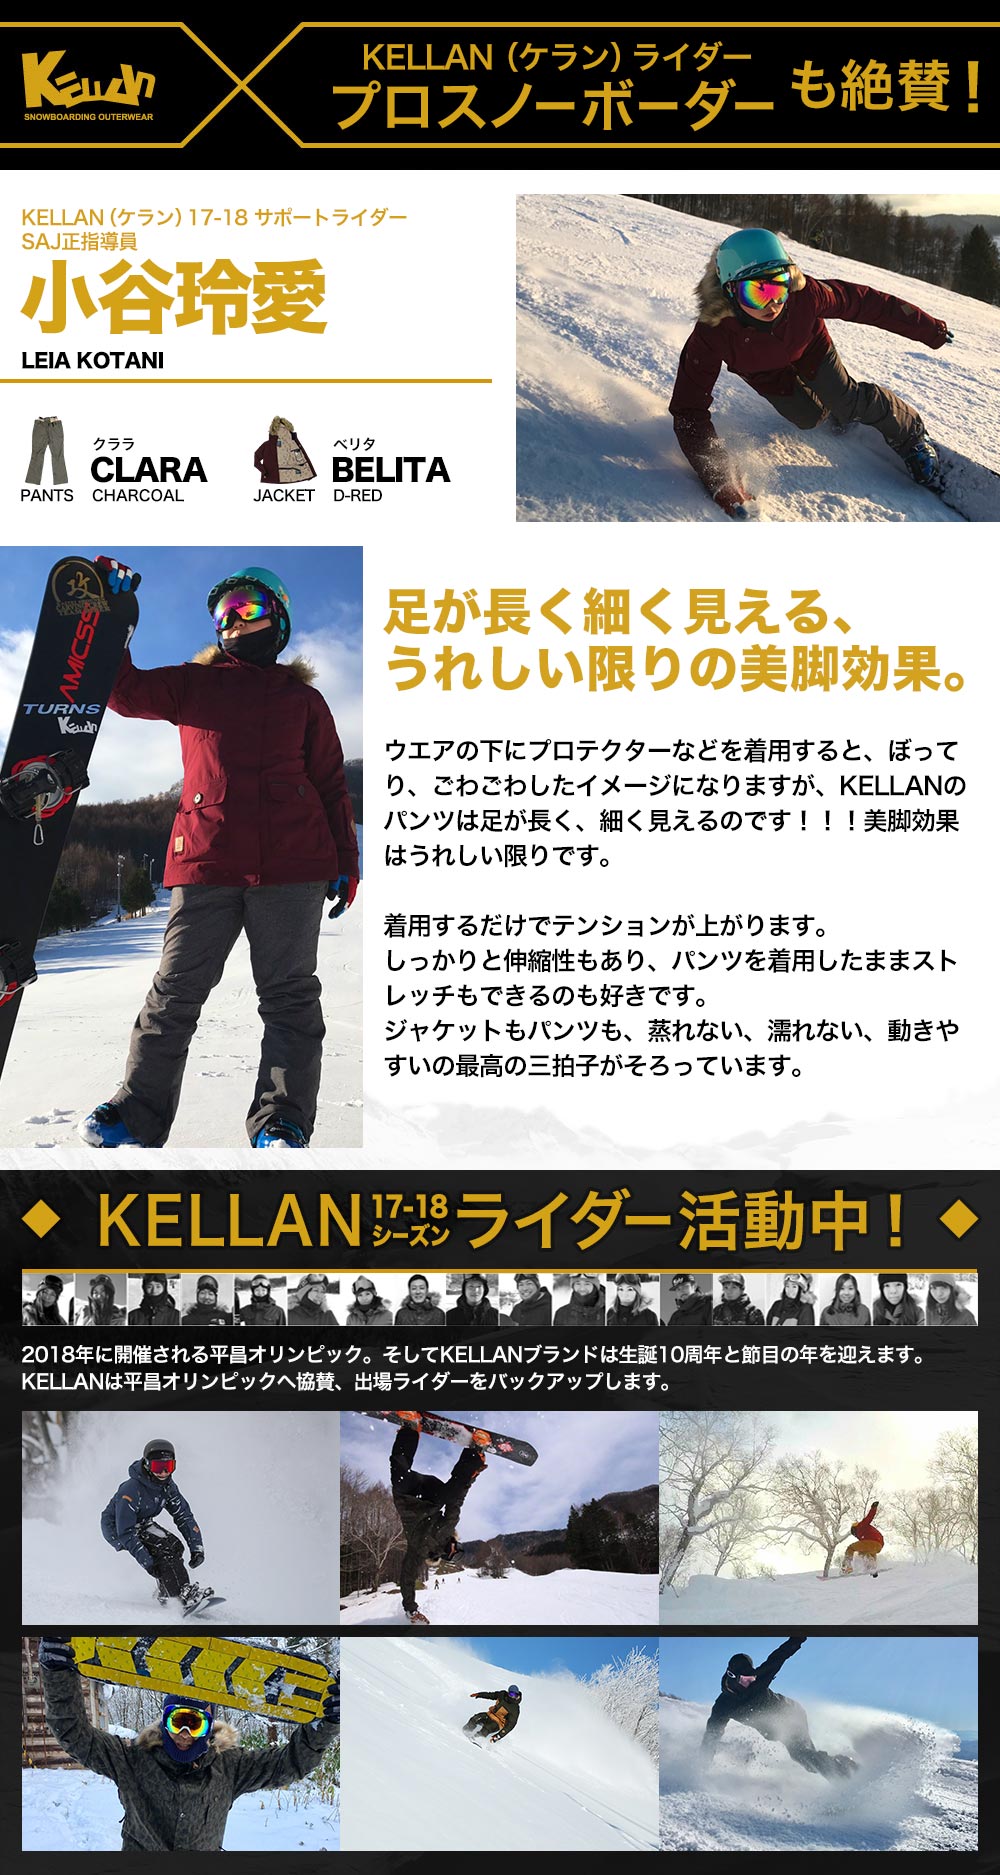 ベストスポーツ スノボ ウェア レディース ケラン クララパンツ スノーボードウェア スキーウェア 大きいサイズ 耐水圧 KELLAN CLARA PNT 10205 送料無料